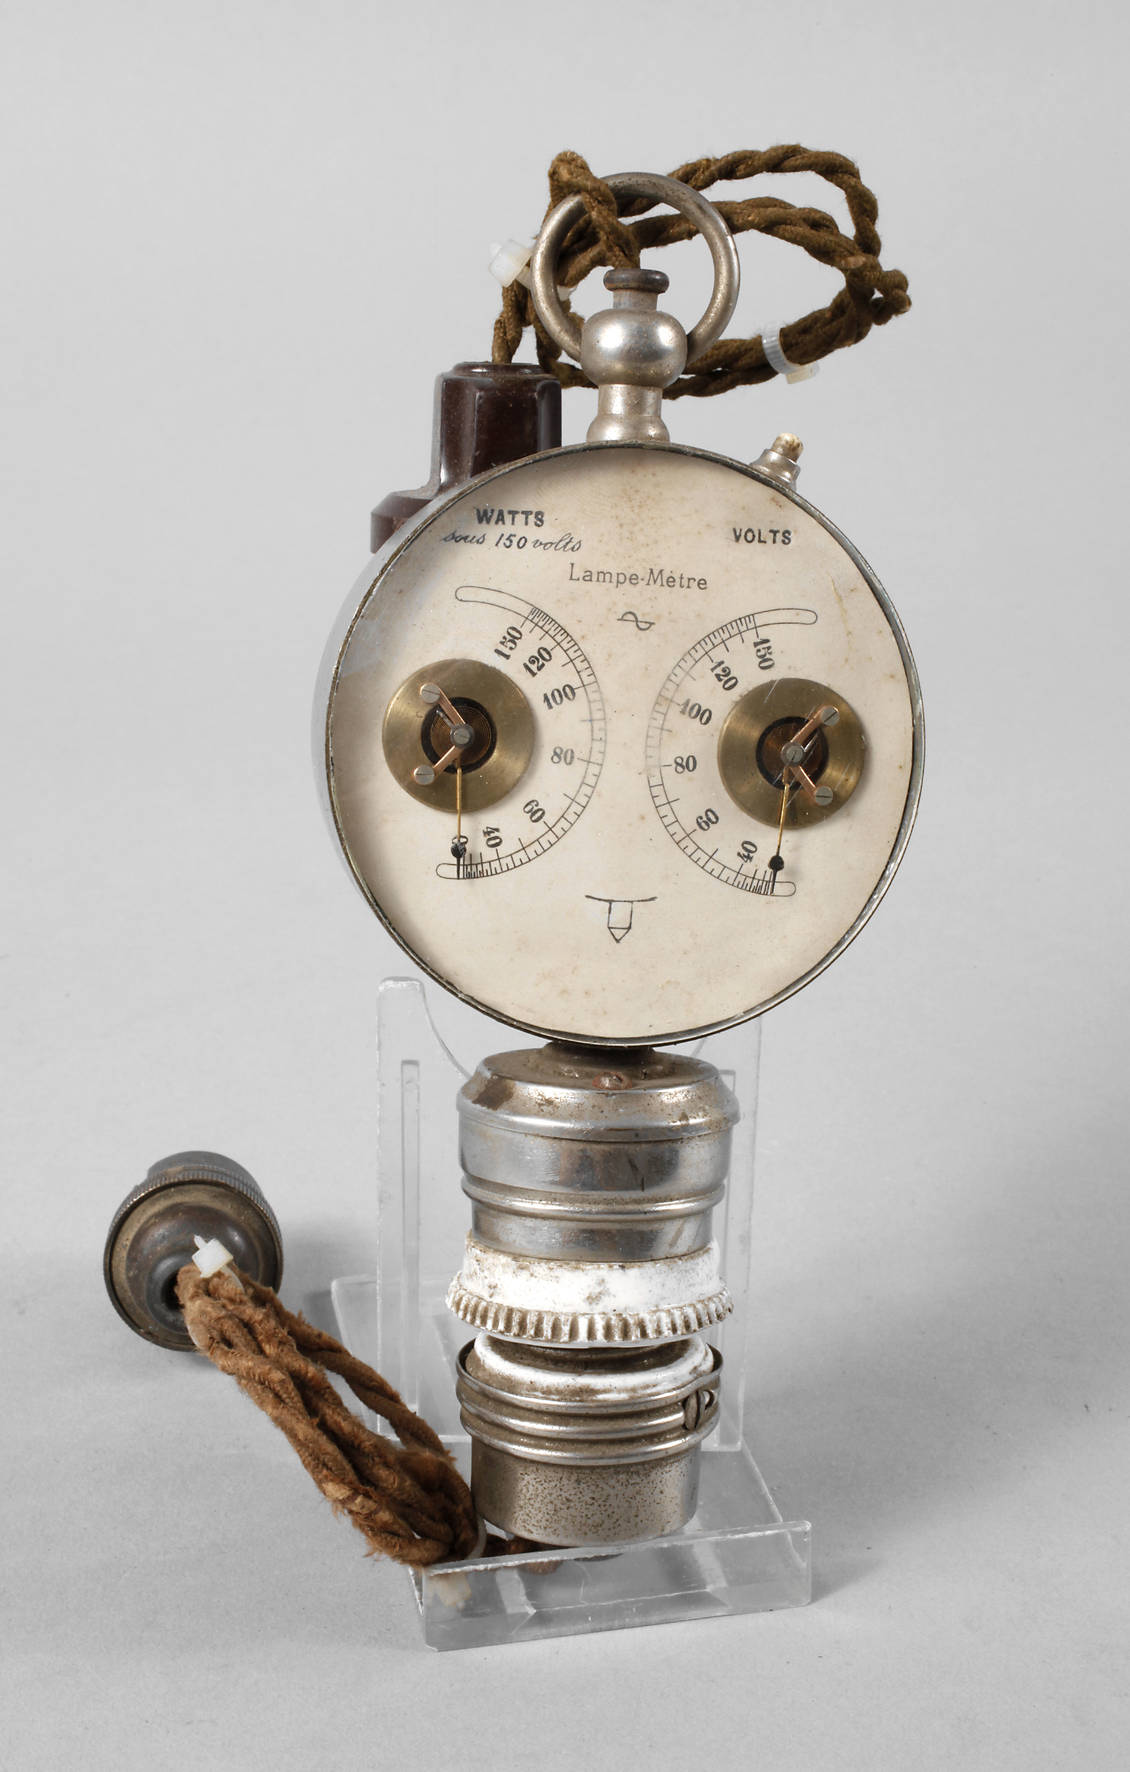 Spannungsmessgerät Lampemetre